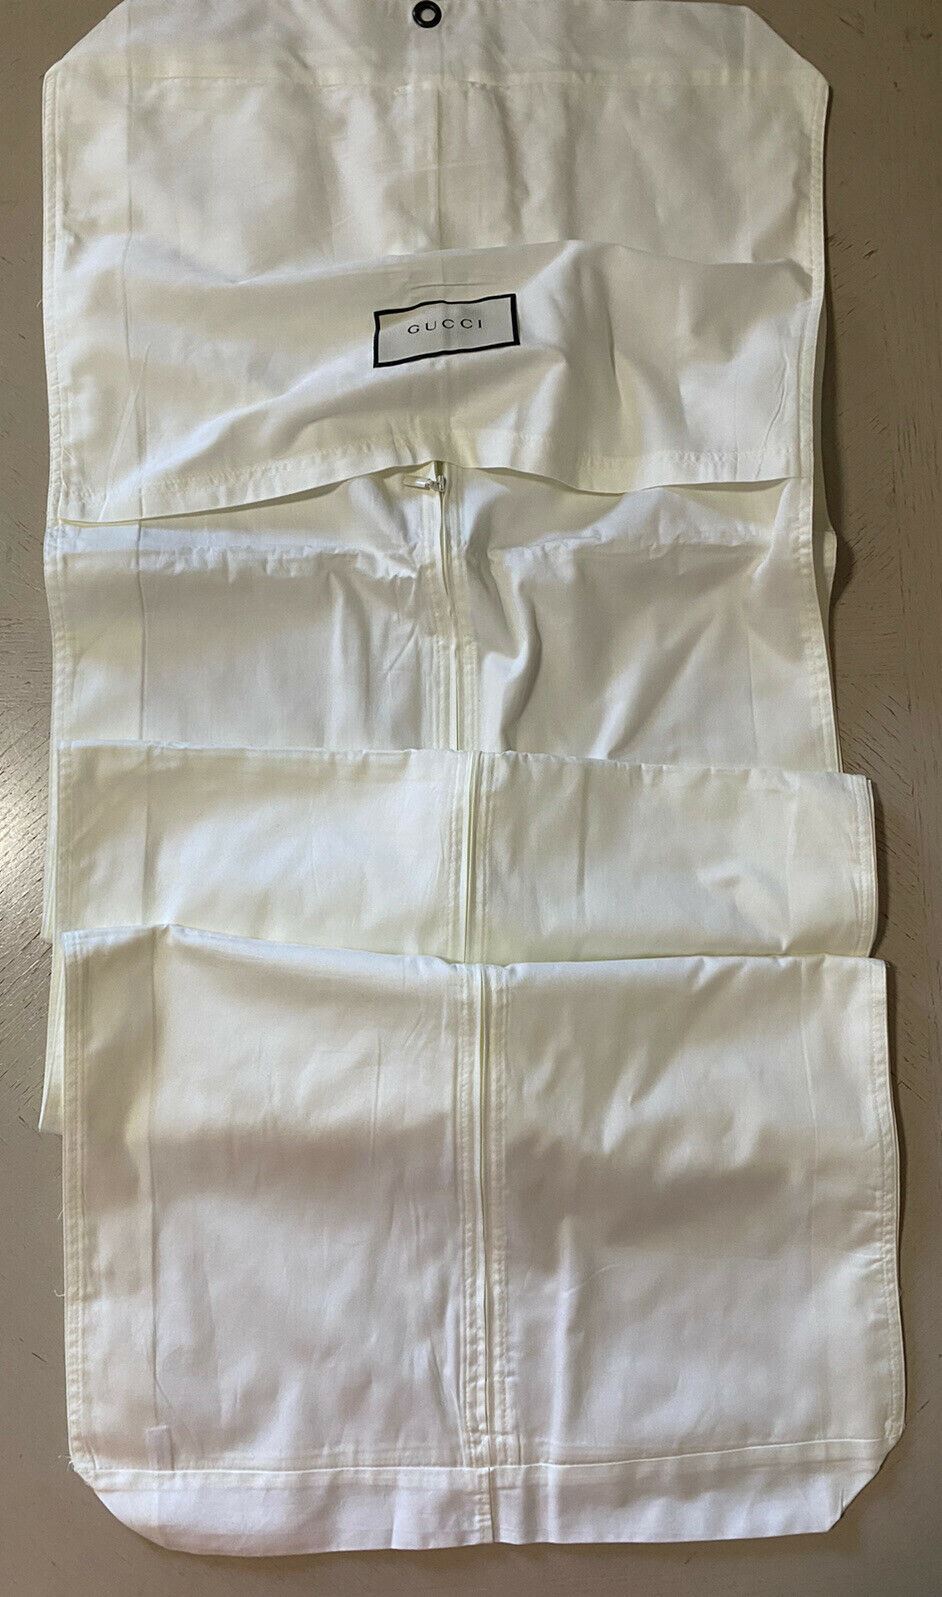 Совершенно новый костюм для одежды Gucci, белая сумка унисекс для любой одежды